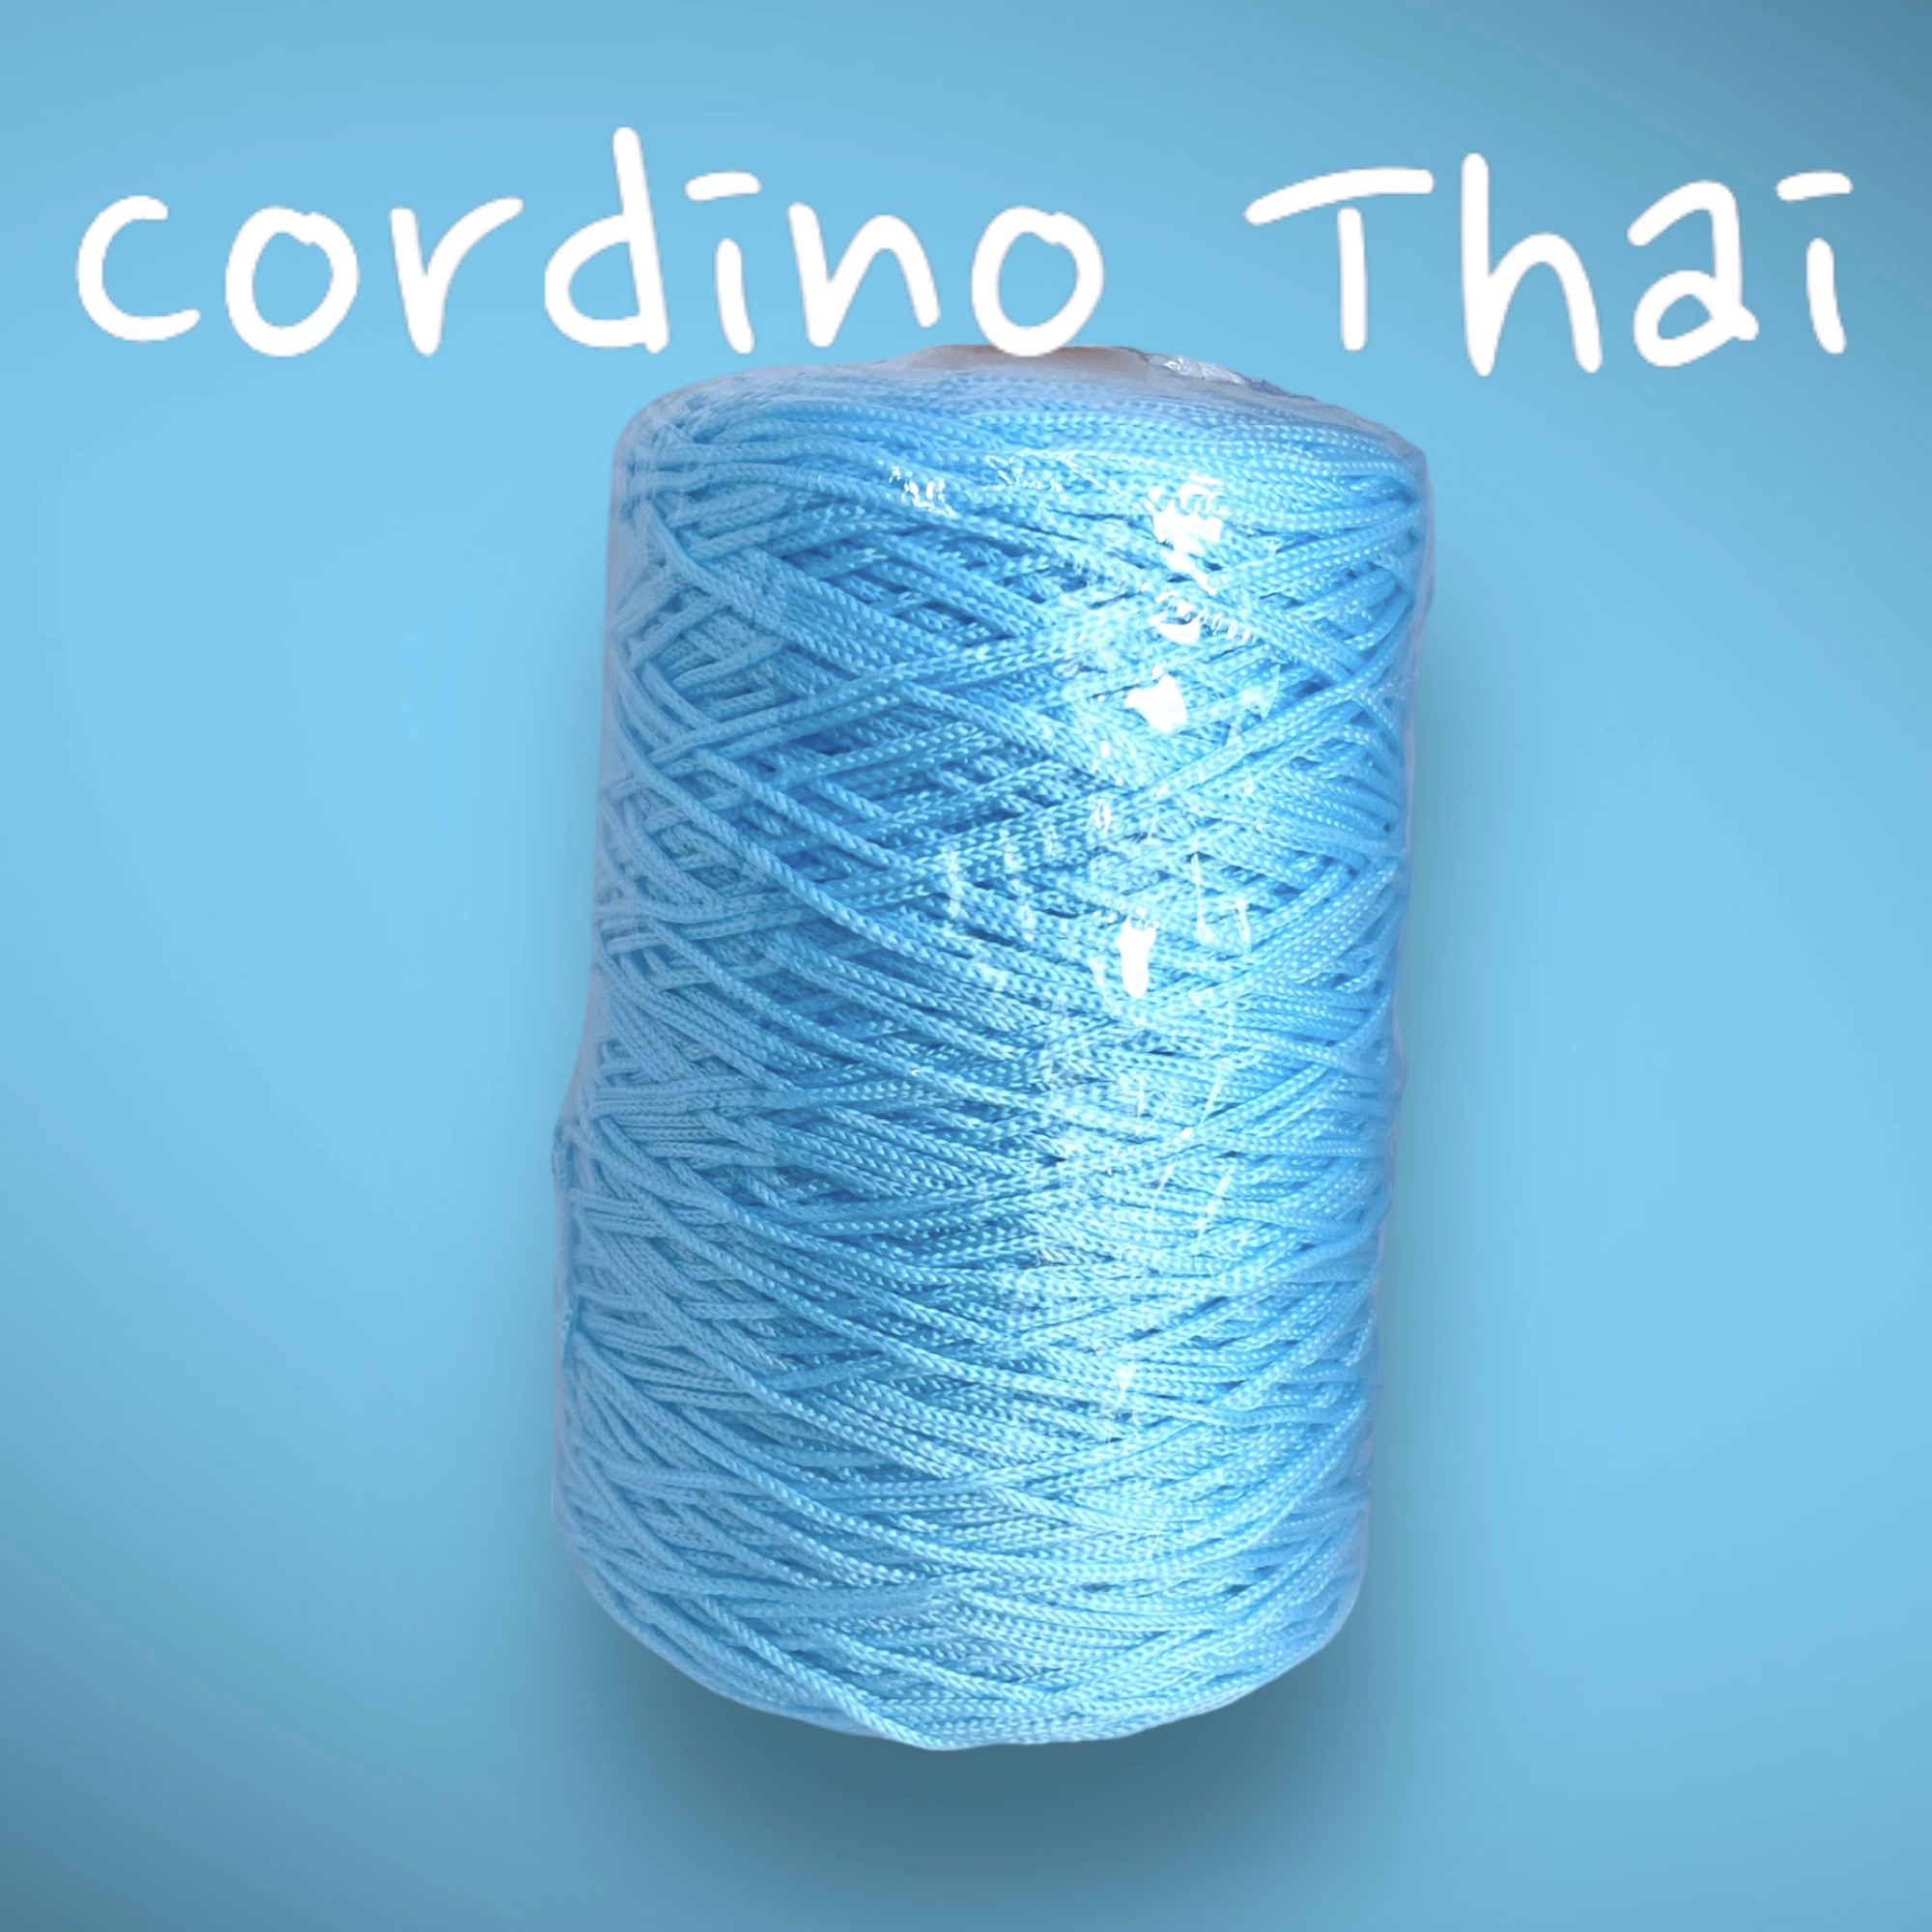 Bundle Cordino Thai Cucirini Tre stelle – 100% Acrilico – 500 Gr - Ricamiamo